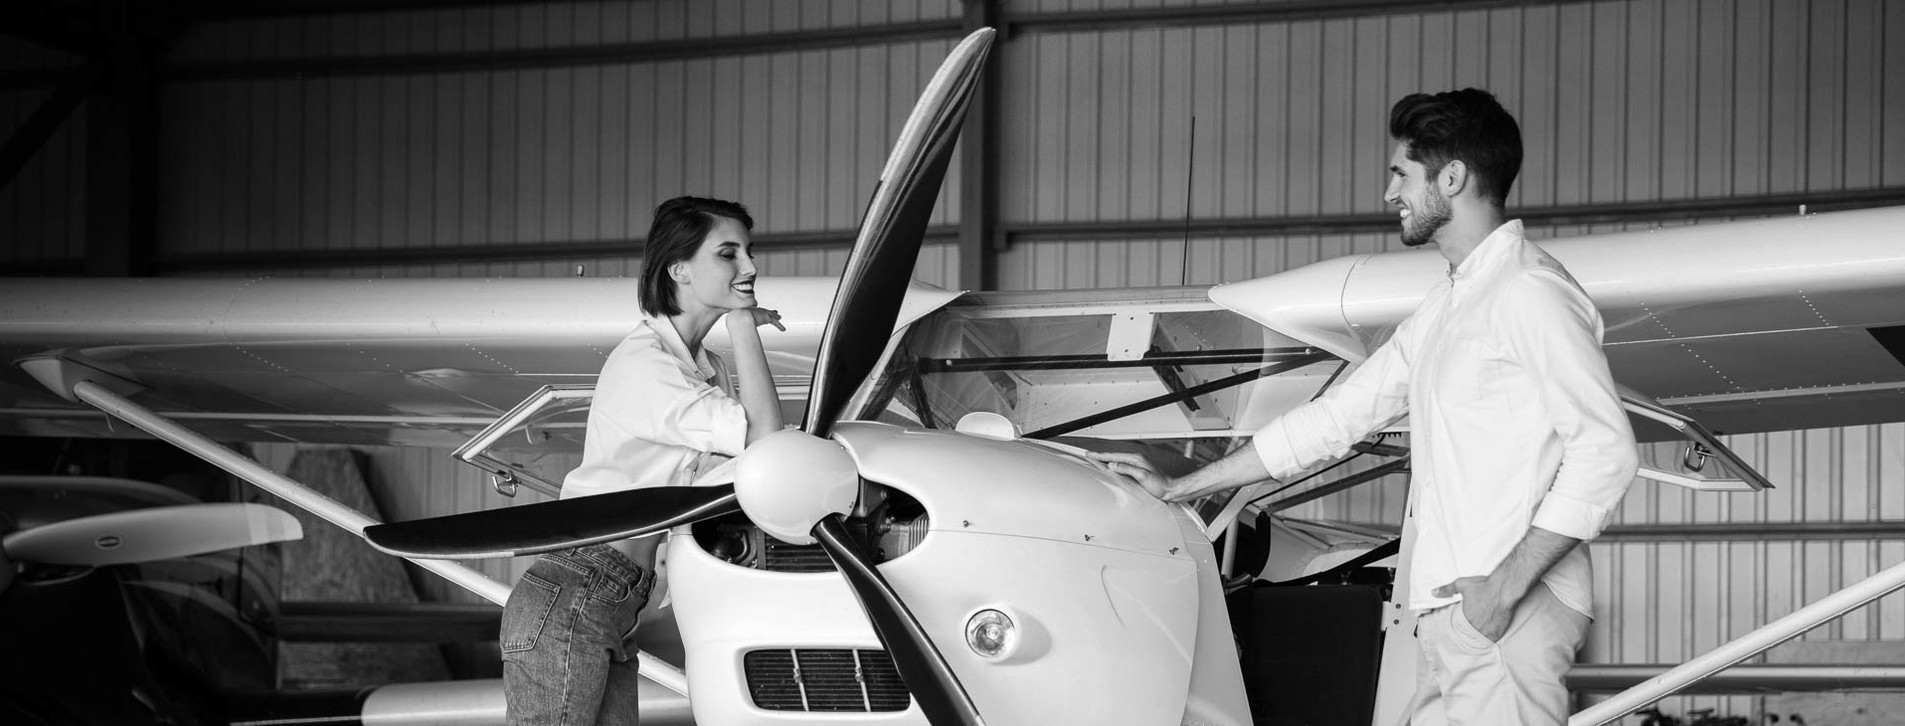 Фото 1 - Курс «Высший пилотаж в отношениях» от Woman Insight